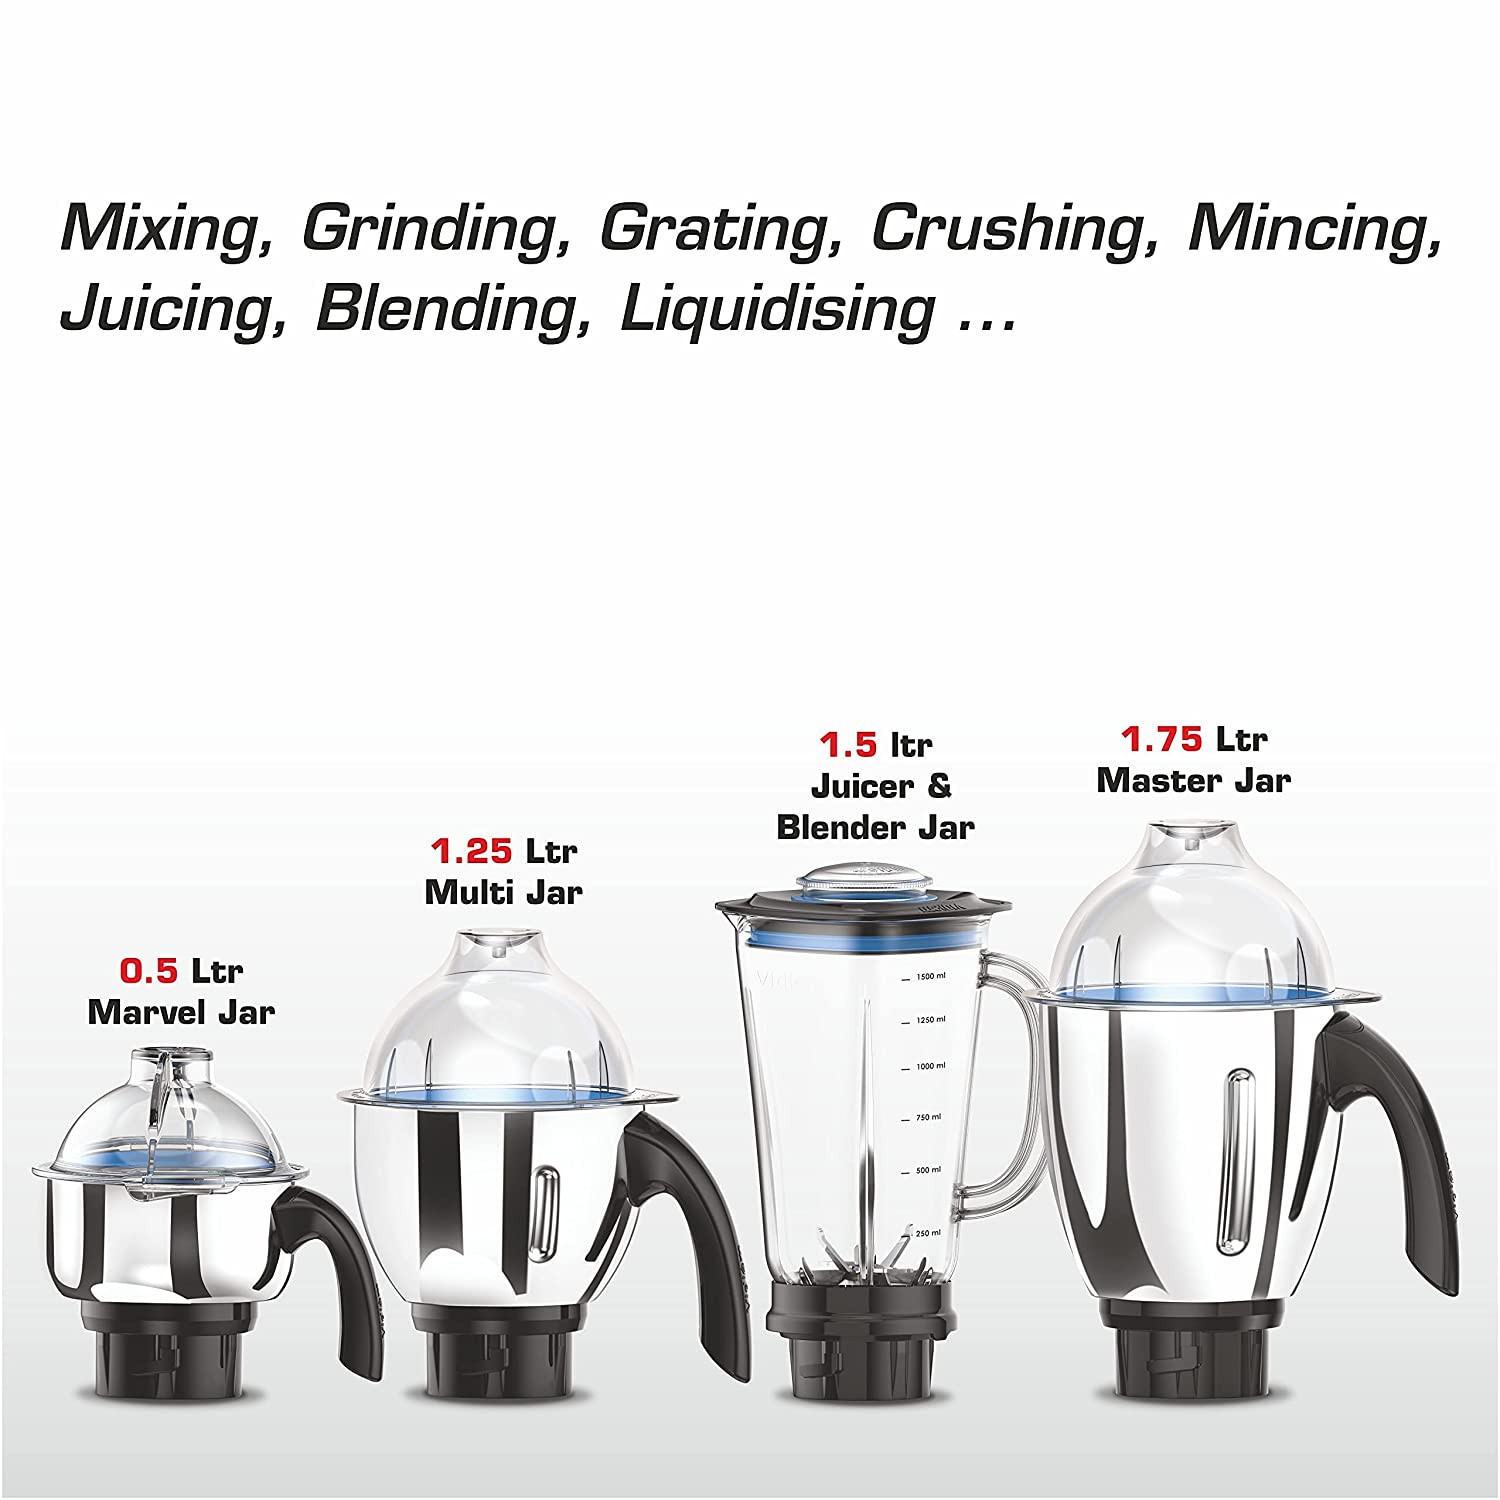 vidiem-tusker-indian-mixer-grinder-blender-food-processor-750w-110v-5-ss-jars-adjustable-vegetable-cutter-dicing-feature-almond-milk-juicer-spice-coffee-grinder-for-usa-canada6